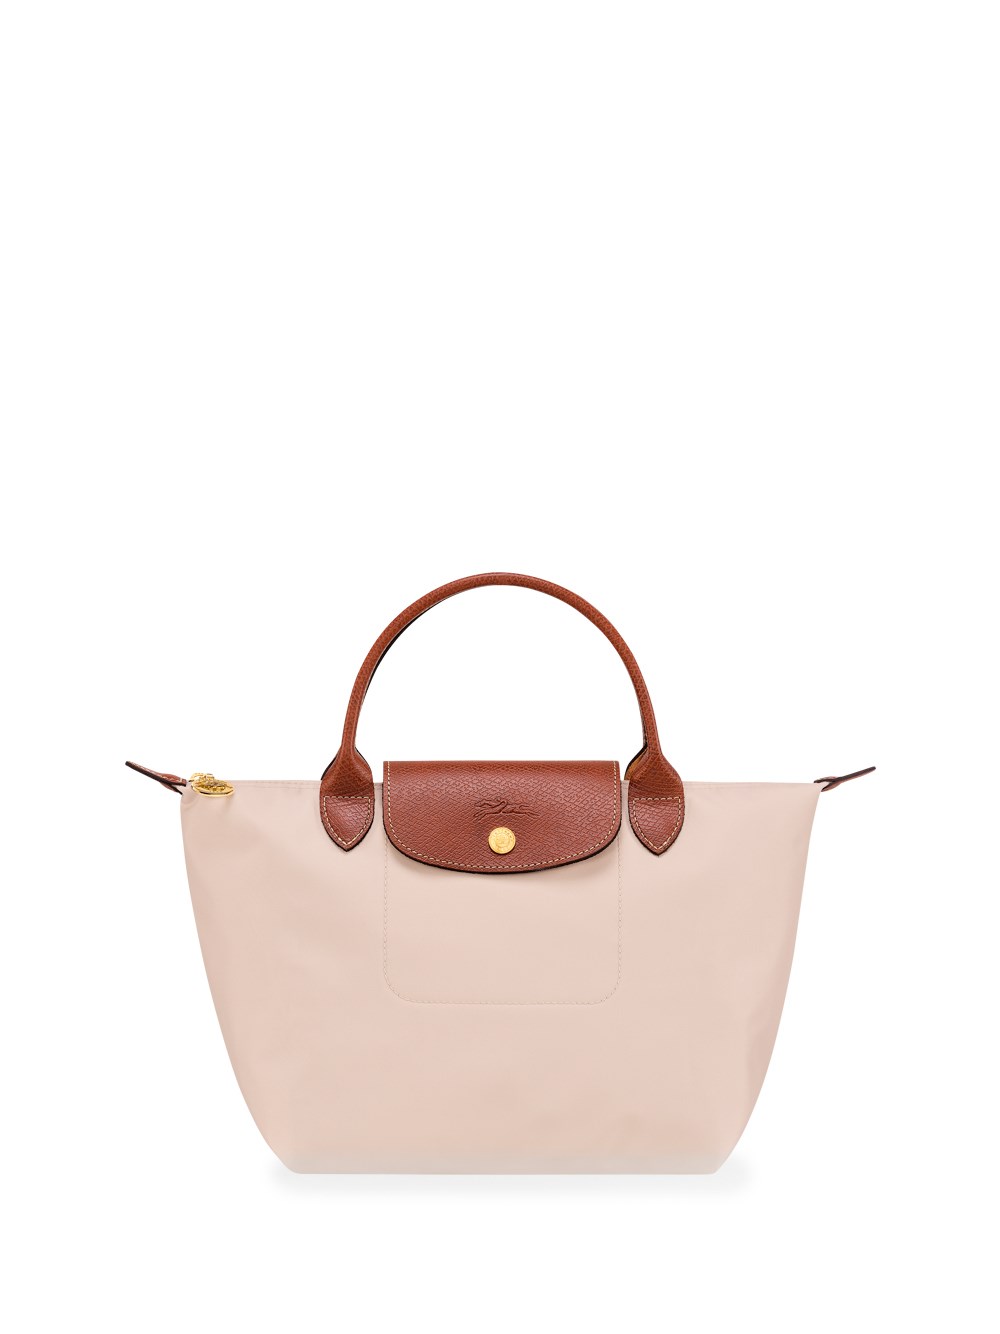 Longchamp, Bags, Longchamp Beige Le Pliage Cosmetic Case Nwt